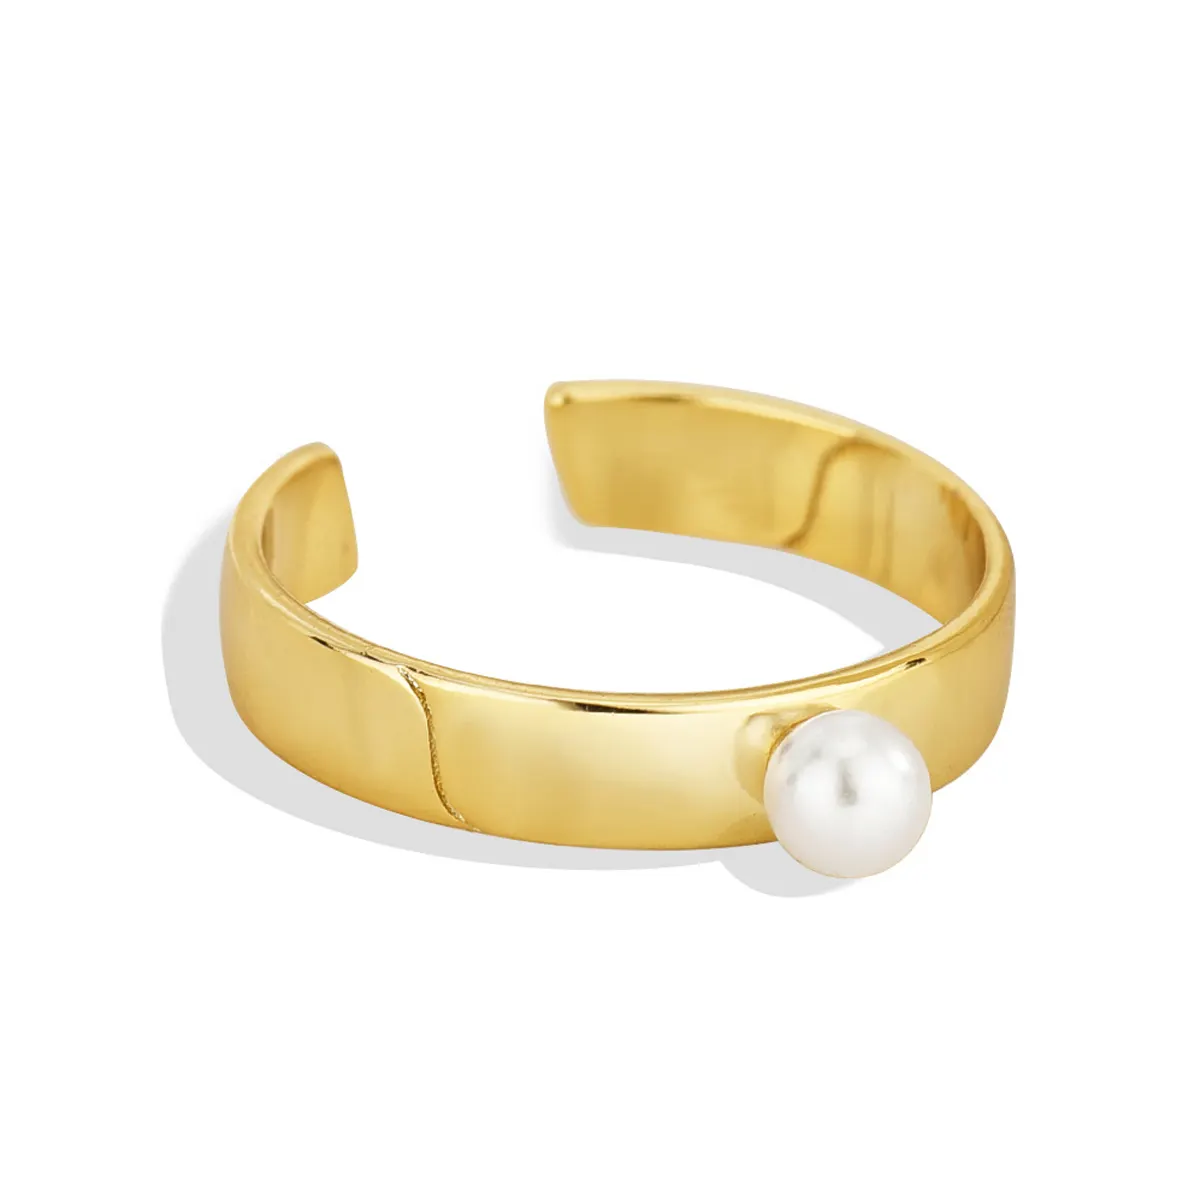 QX hecho a mano personalizado Oem joyería fina Vintage aleación 18K chapado en oro compromiso perla mujeres boda ajustable anillos abiertos de lujo